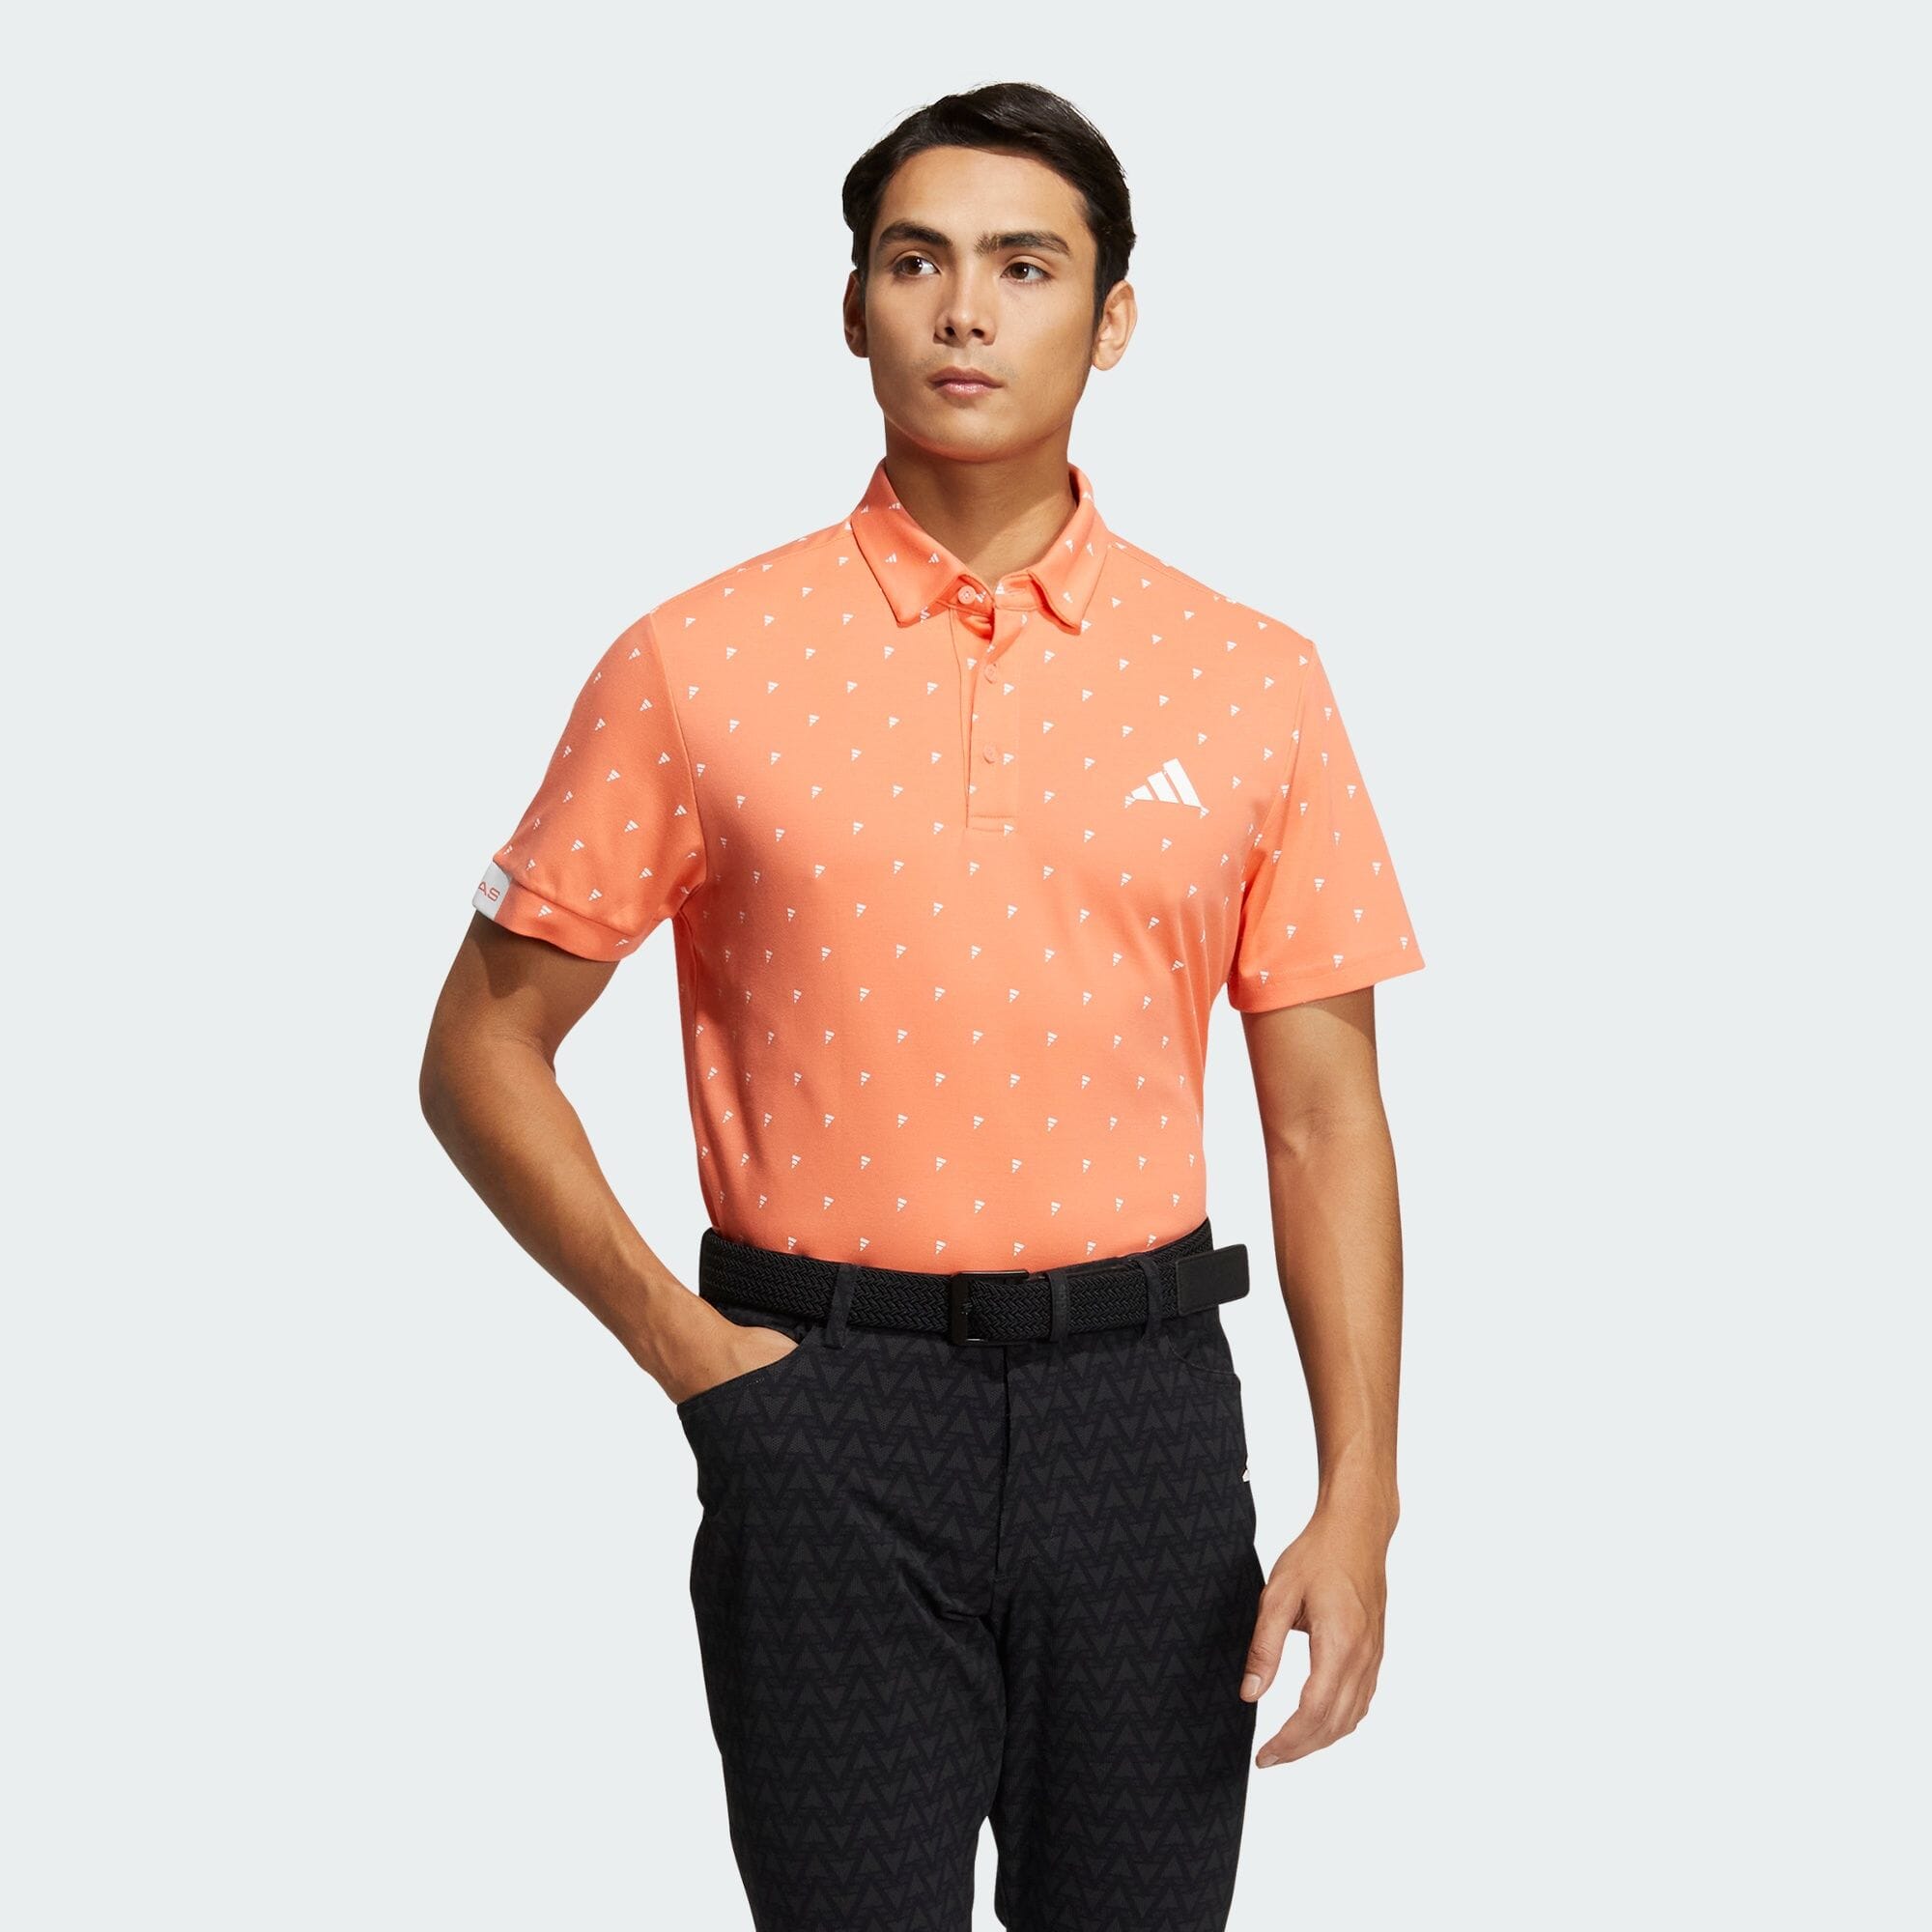 アディダスロゴモノグラムプリント 半袖ボタンダウンシャツ メンズ ゴルフ